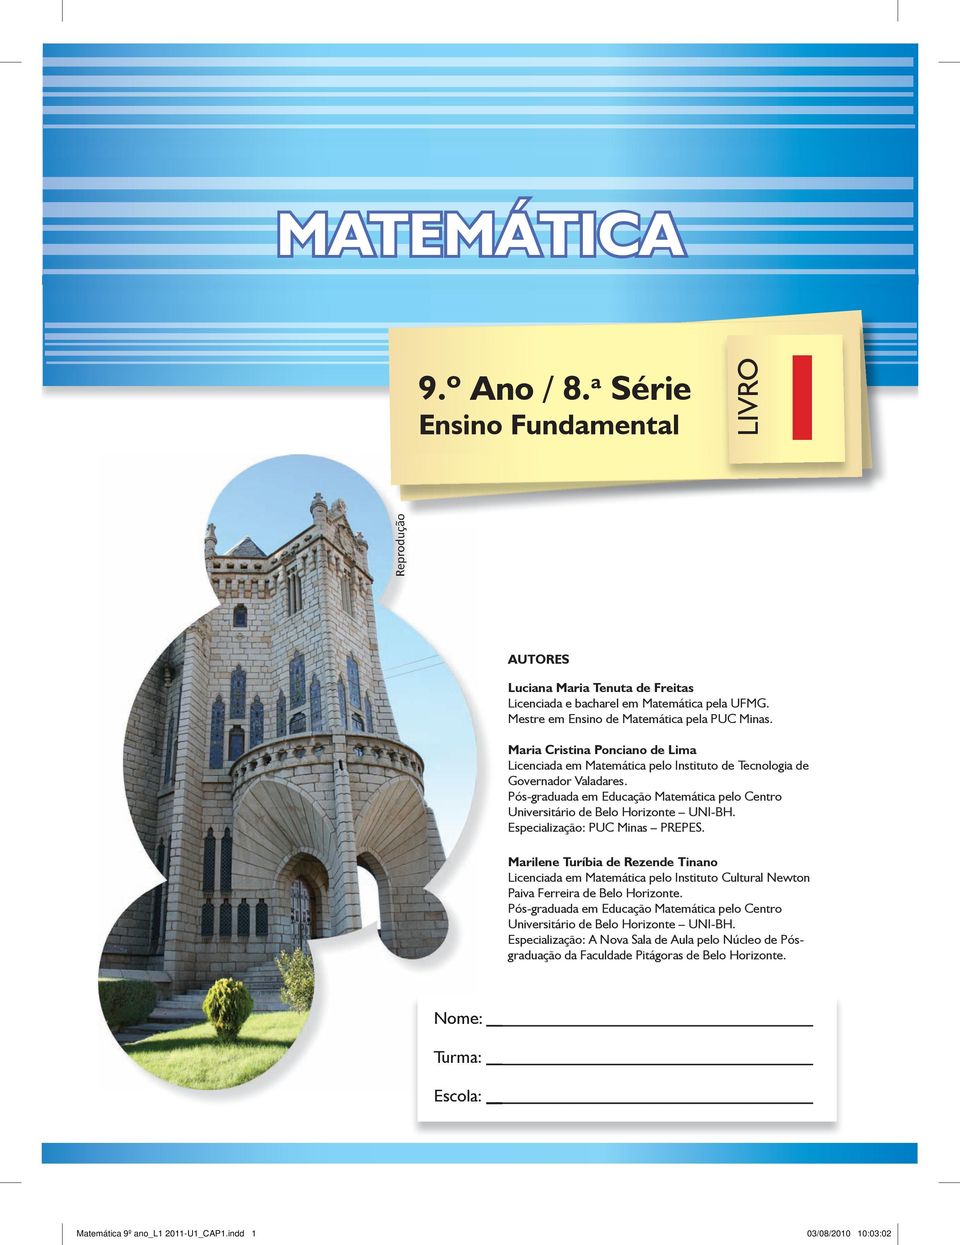 Pós-graduada em Educação Matemática pelo Centro Universitário de Belo Horizonte UNI-BH. Especialização: PUC Minas PREPES.